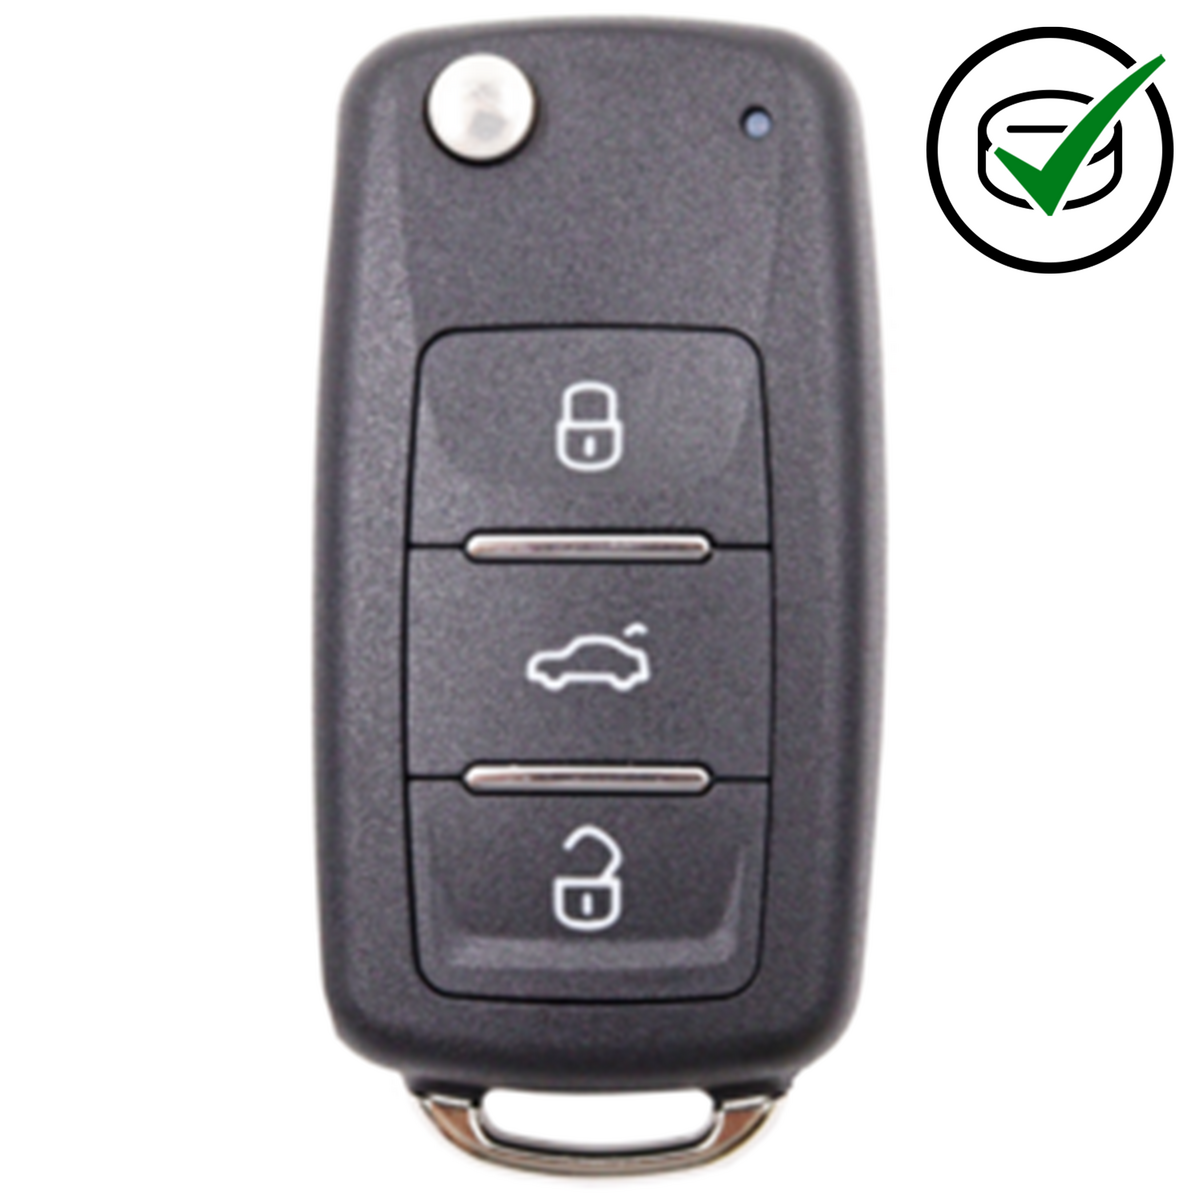 KeyDIY 3 Button Flip Key to suit NB08-3